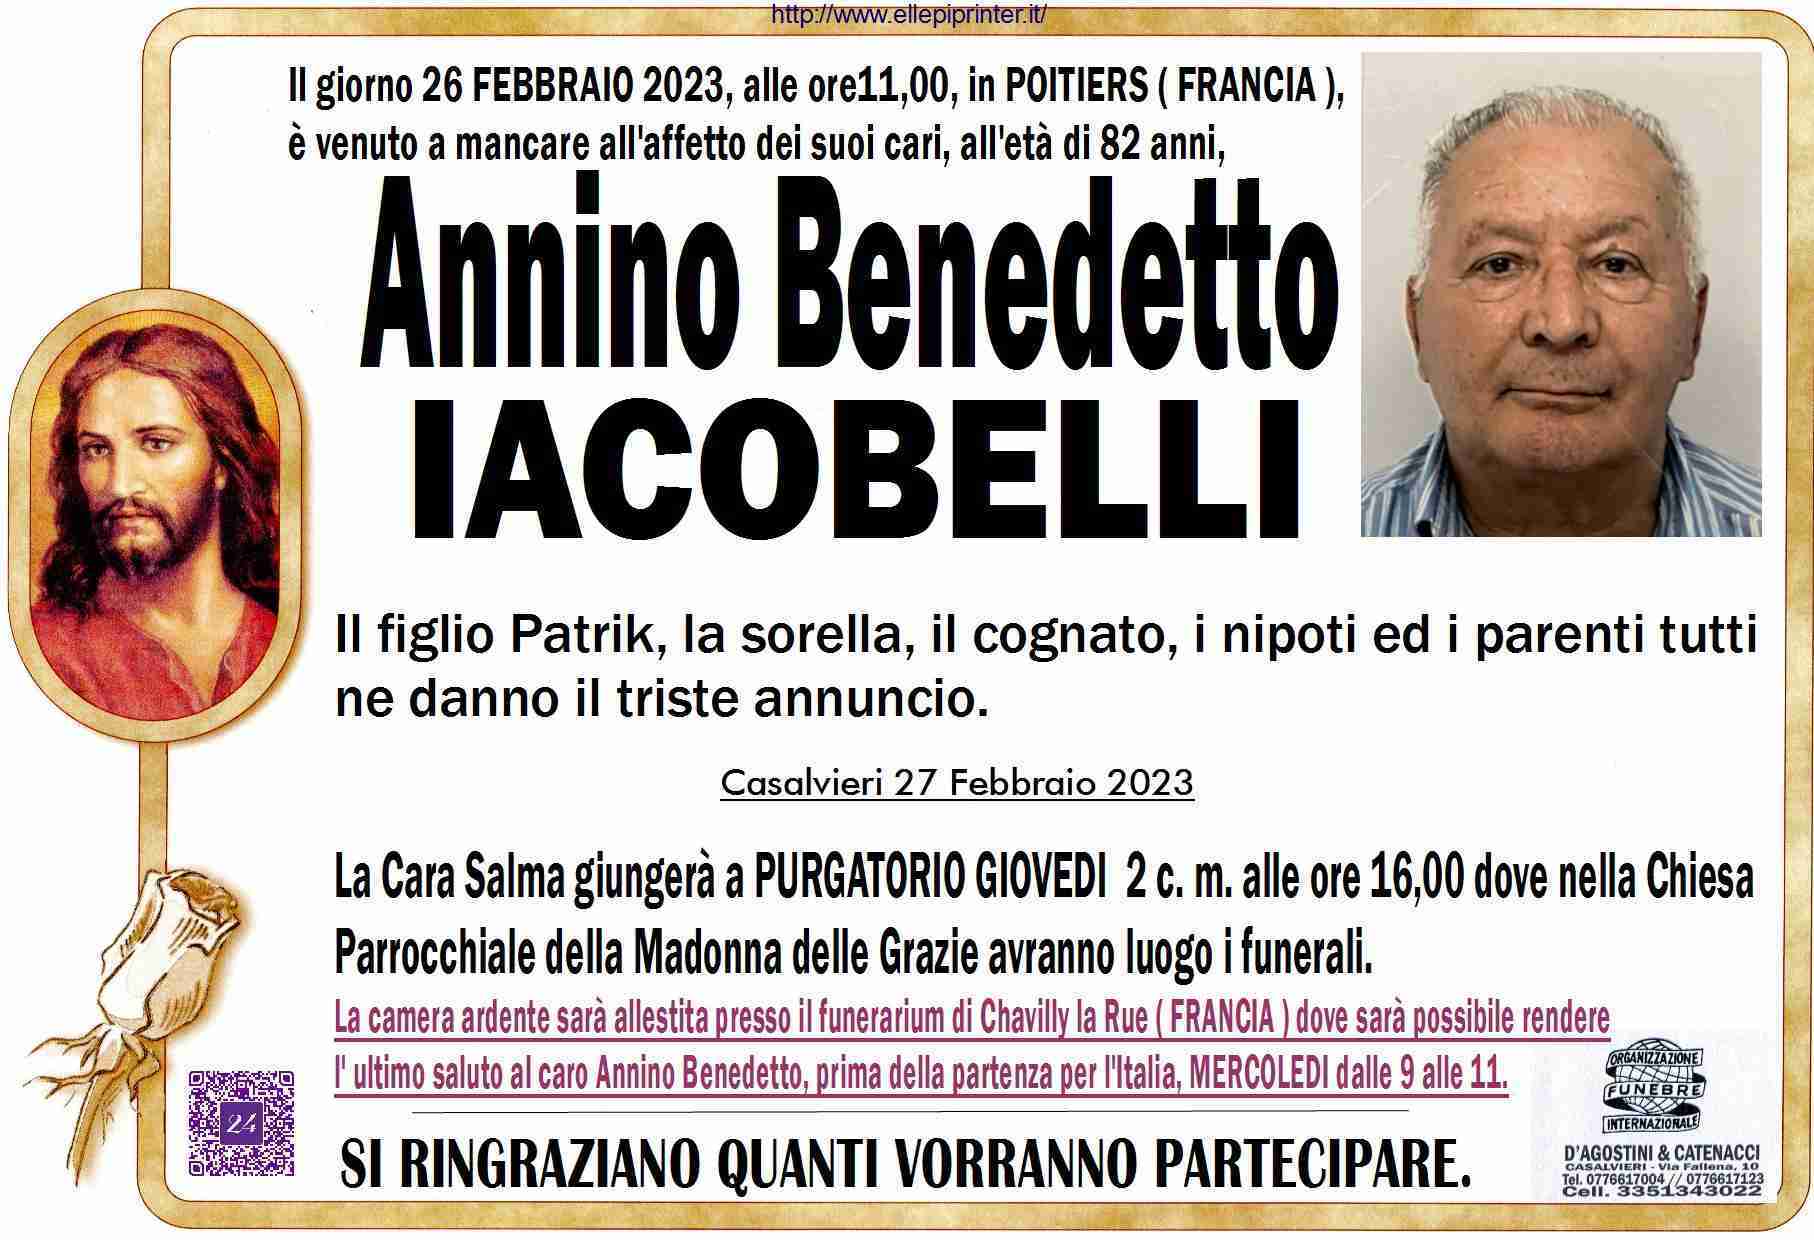 Annino Benedetto Iacobelli